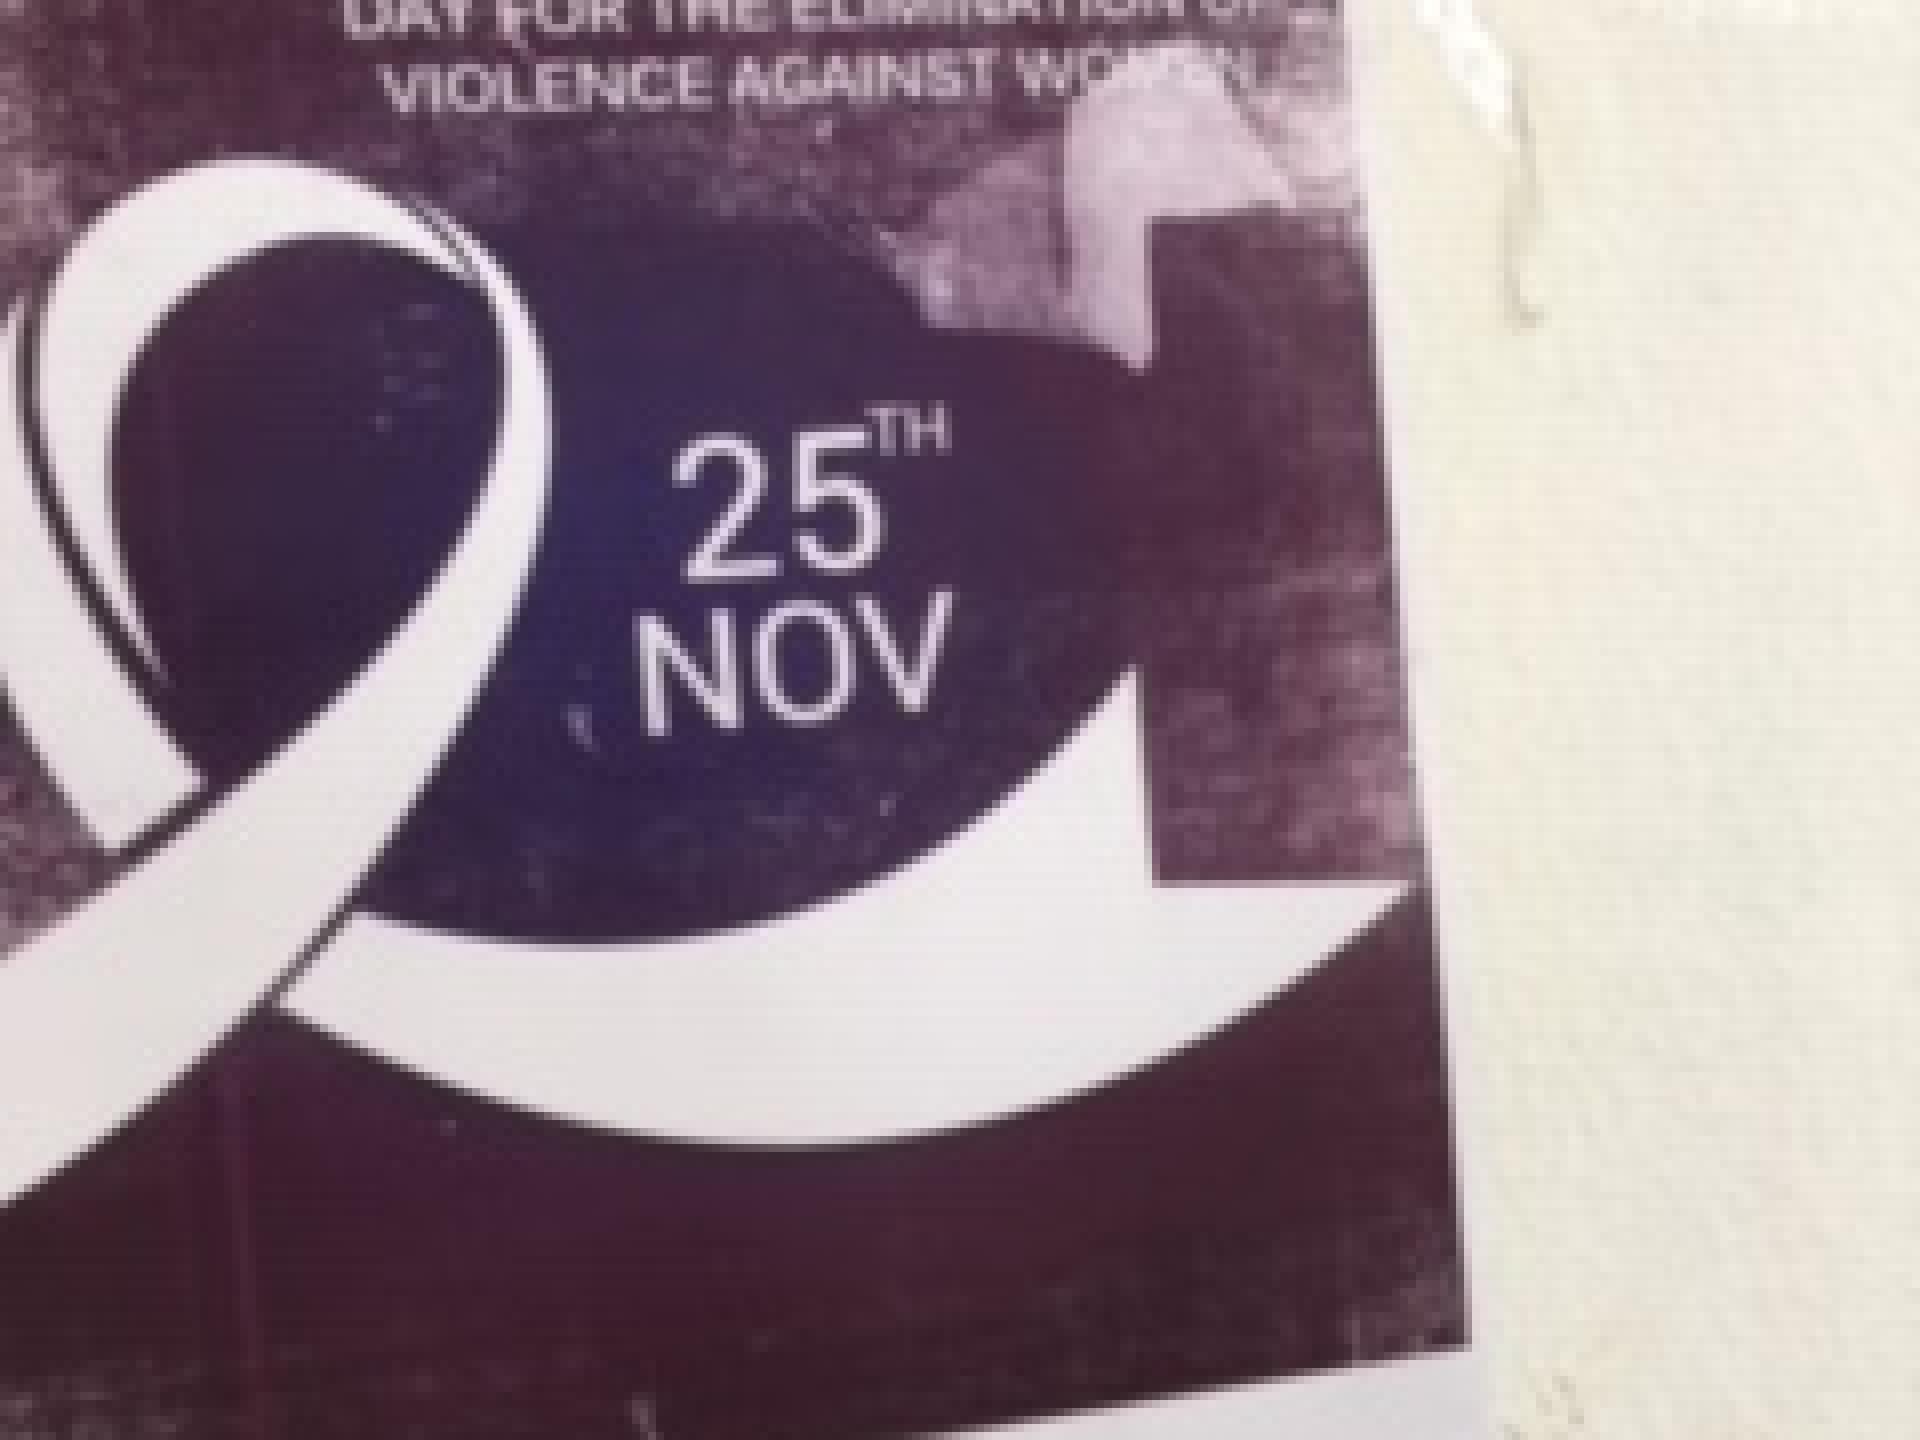 פוסטר על הקיר: "יום בינלאומי למיגור אלימות נגד נשים.”